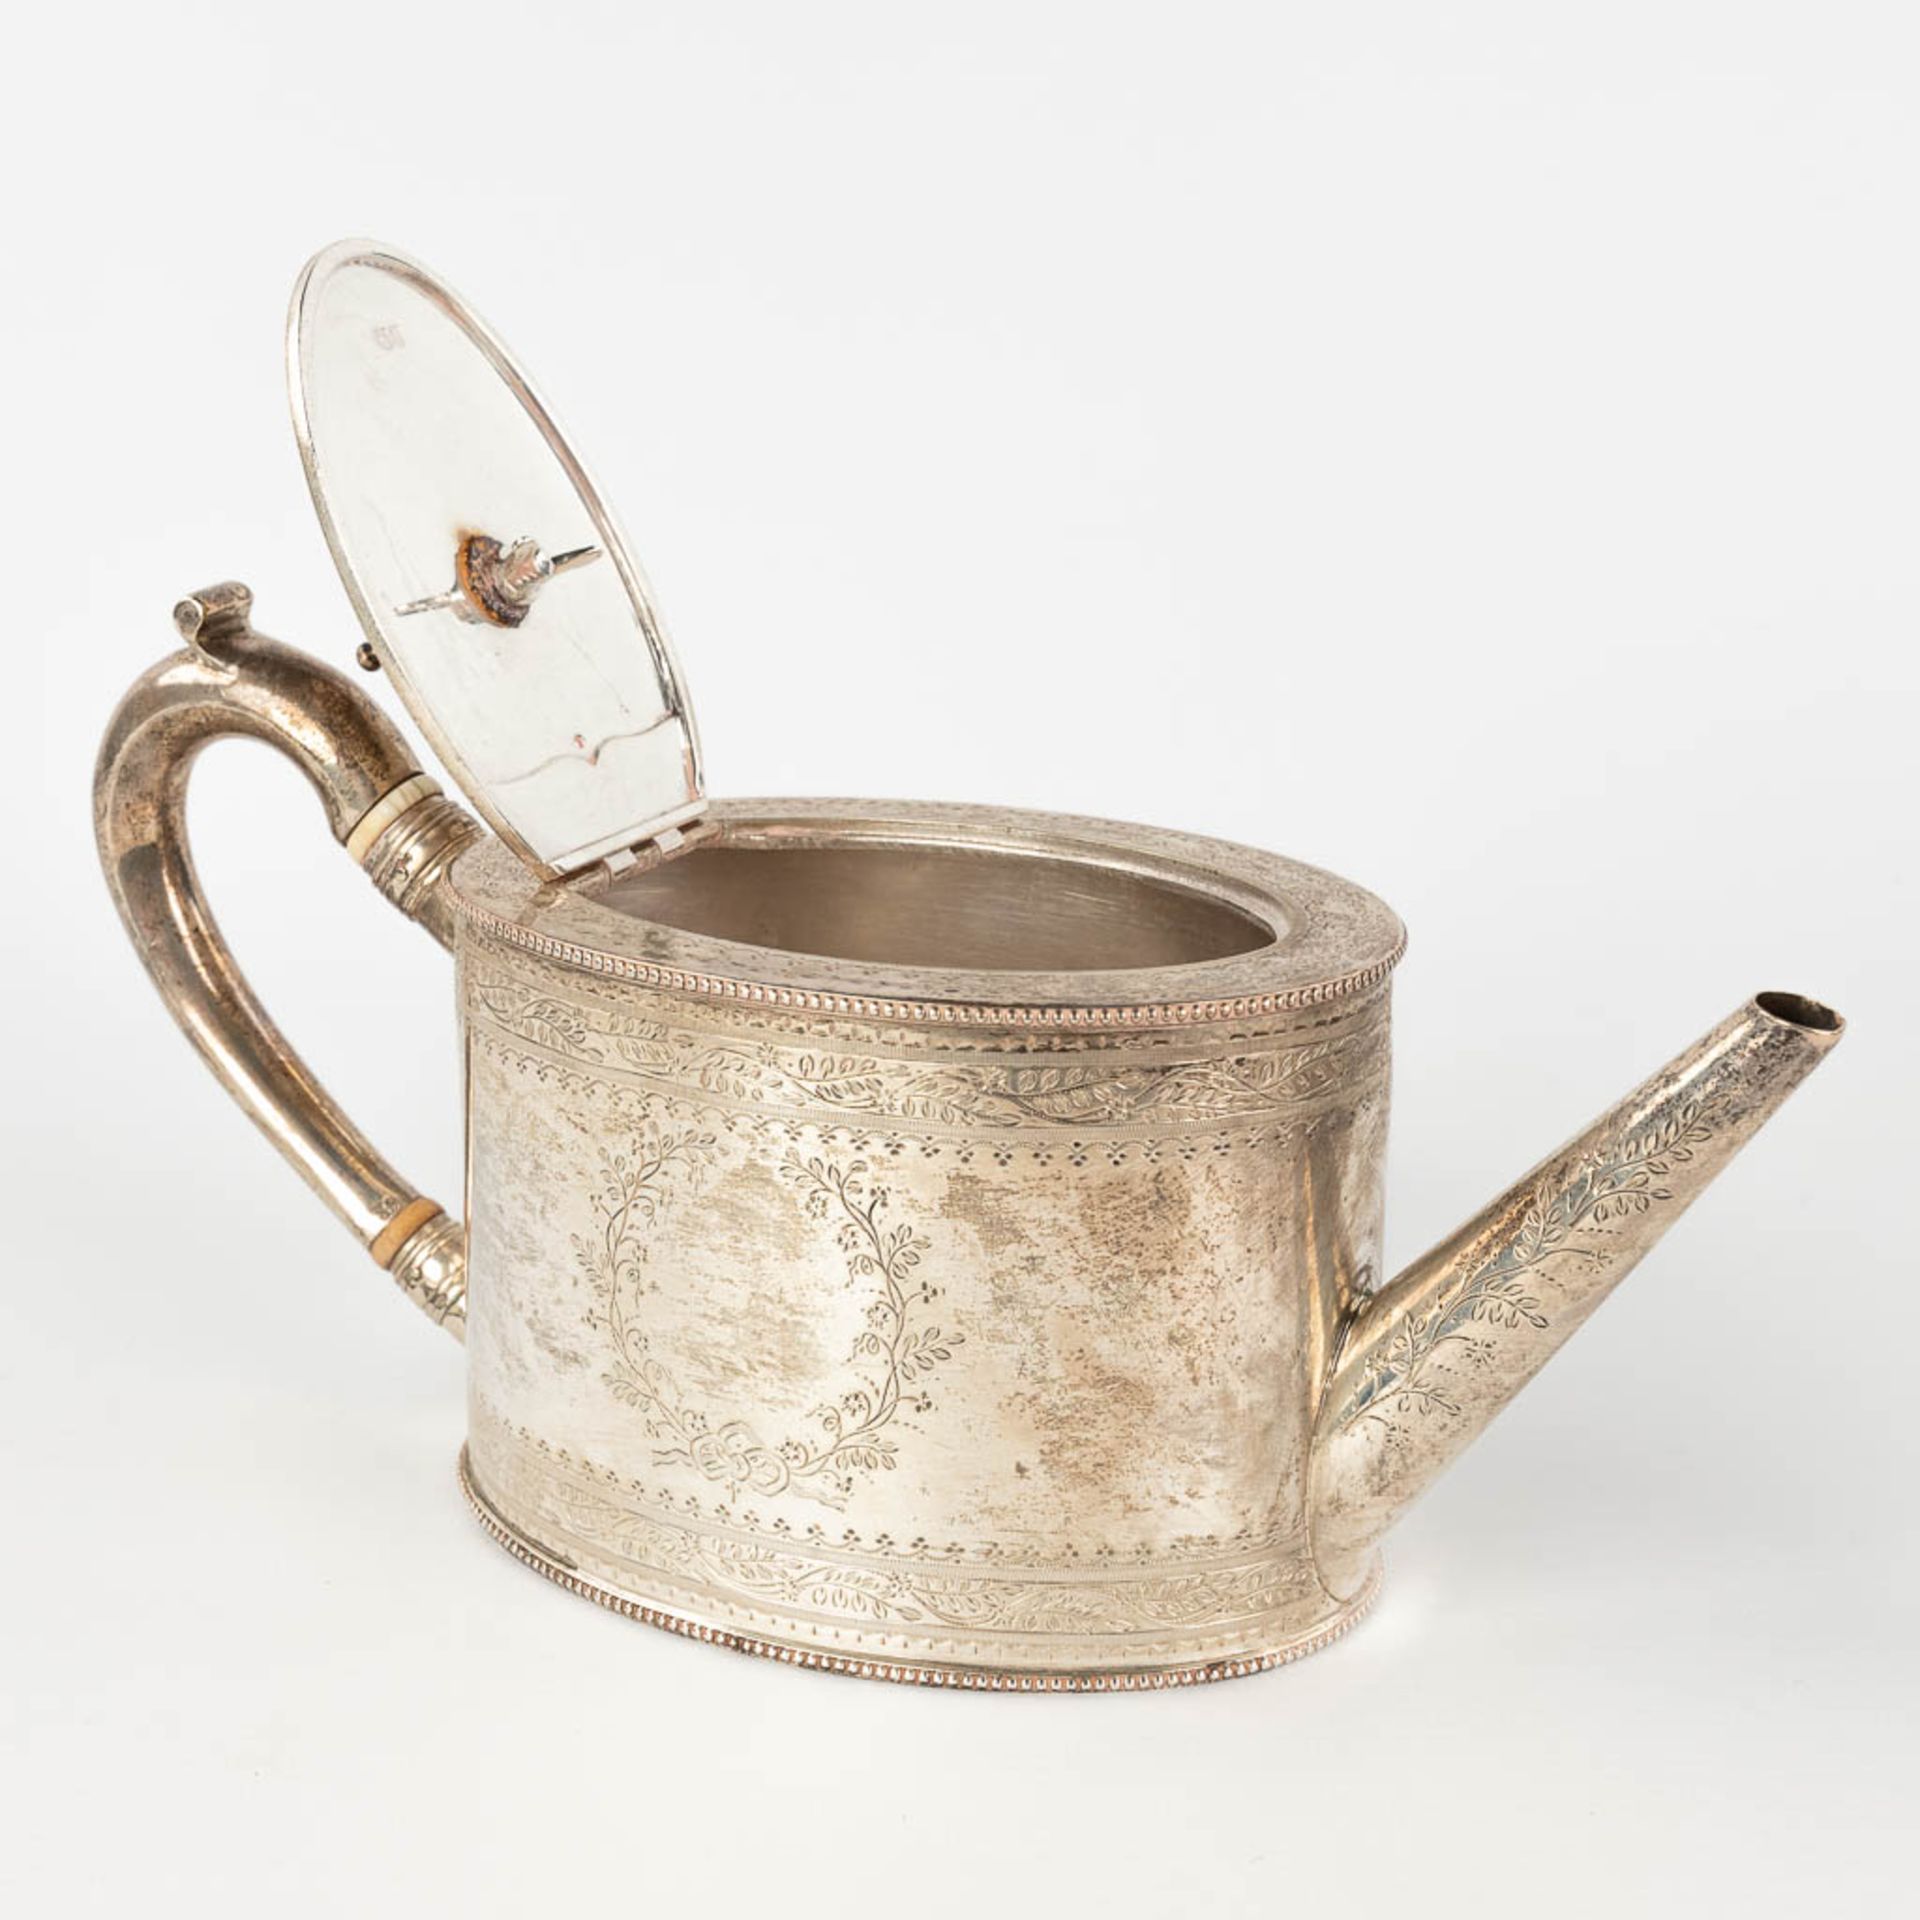 An antique tea pot, silver, London, 19th century. 520g. (L: 10 x W: 26 x H: 13 cm) - Image 4 of 14